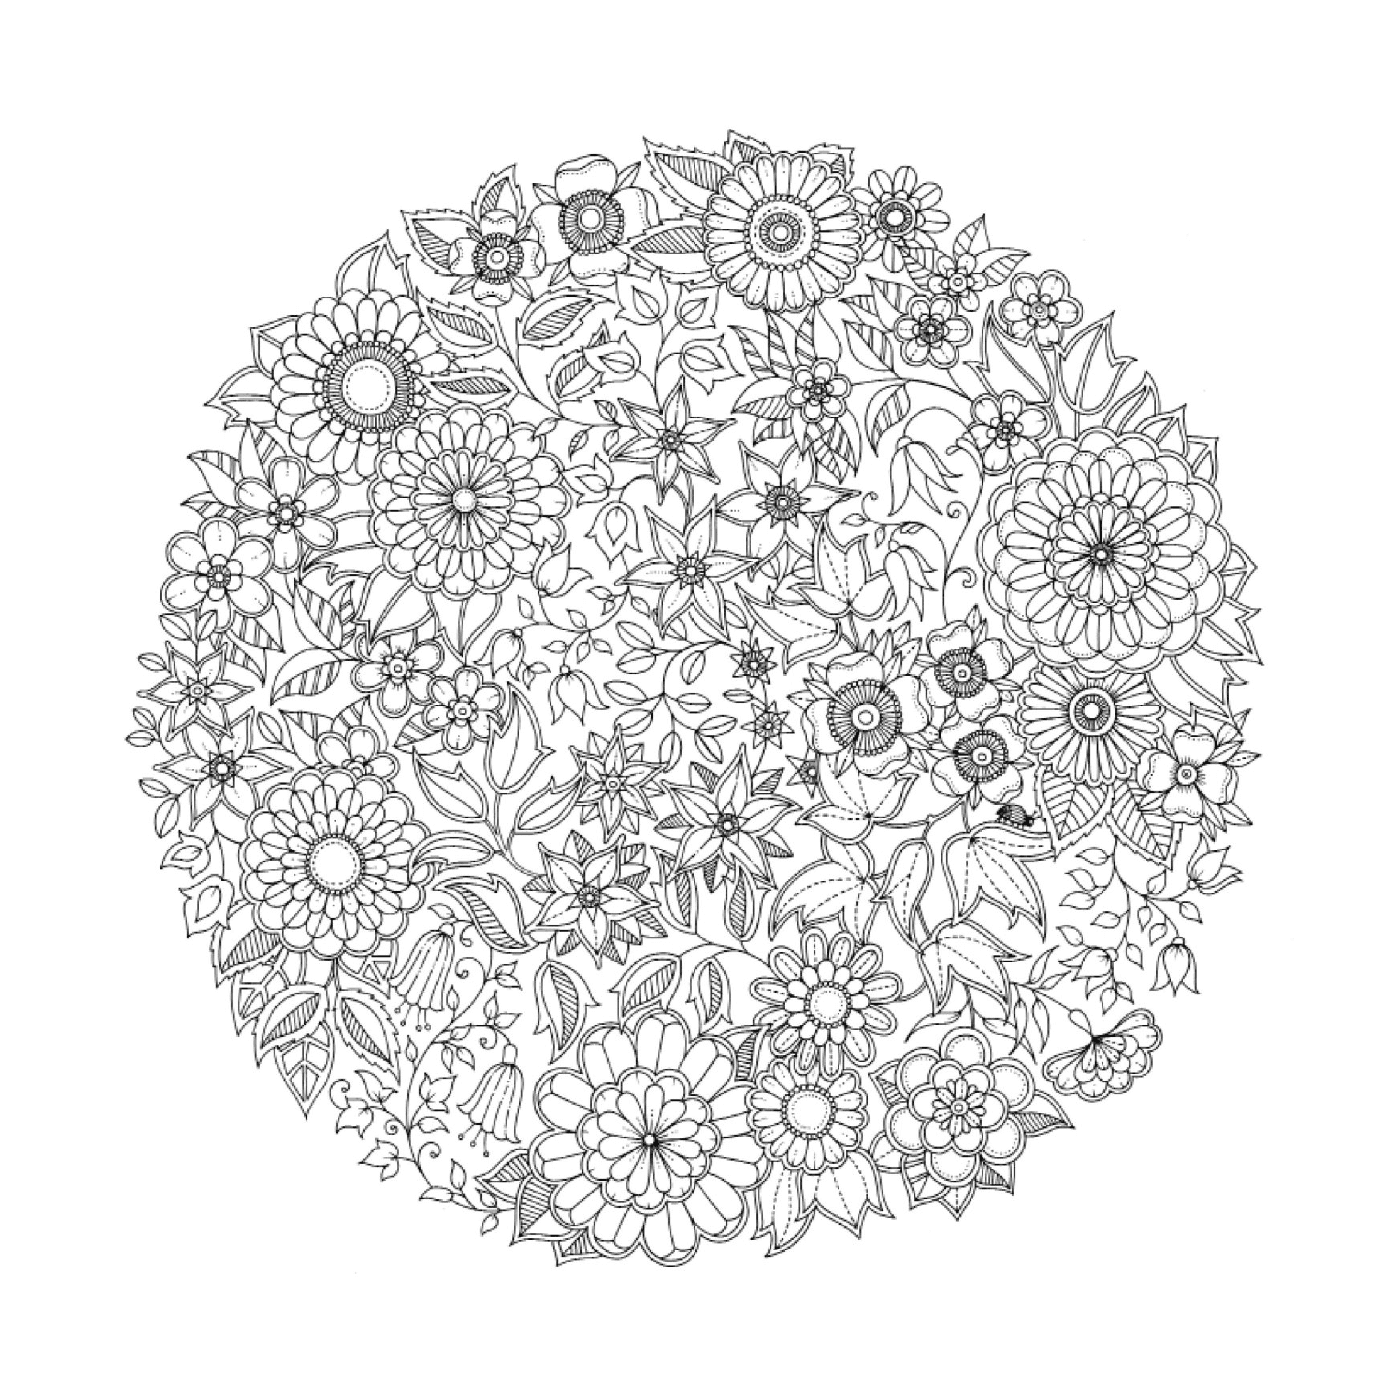  ein kreisförmiges Muster von Blumen in schwarz und weiß schwer zu identifizieren 